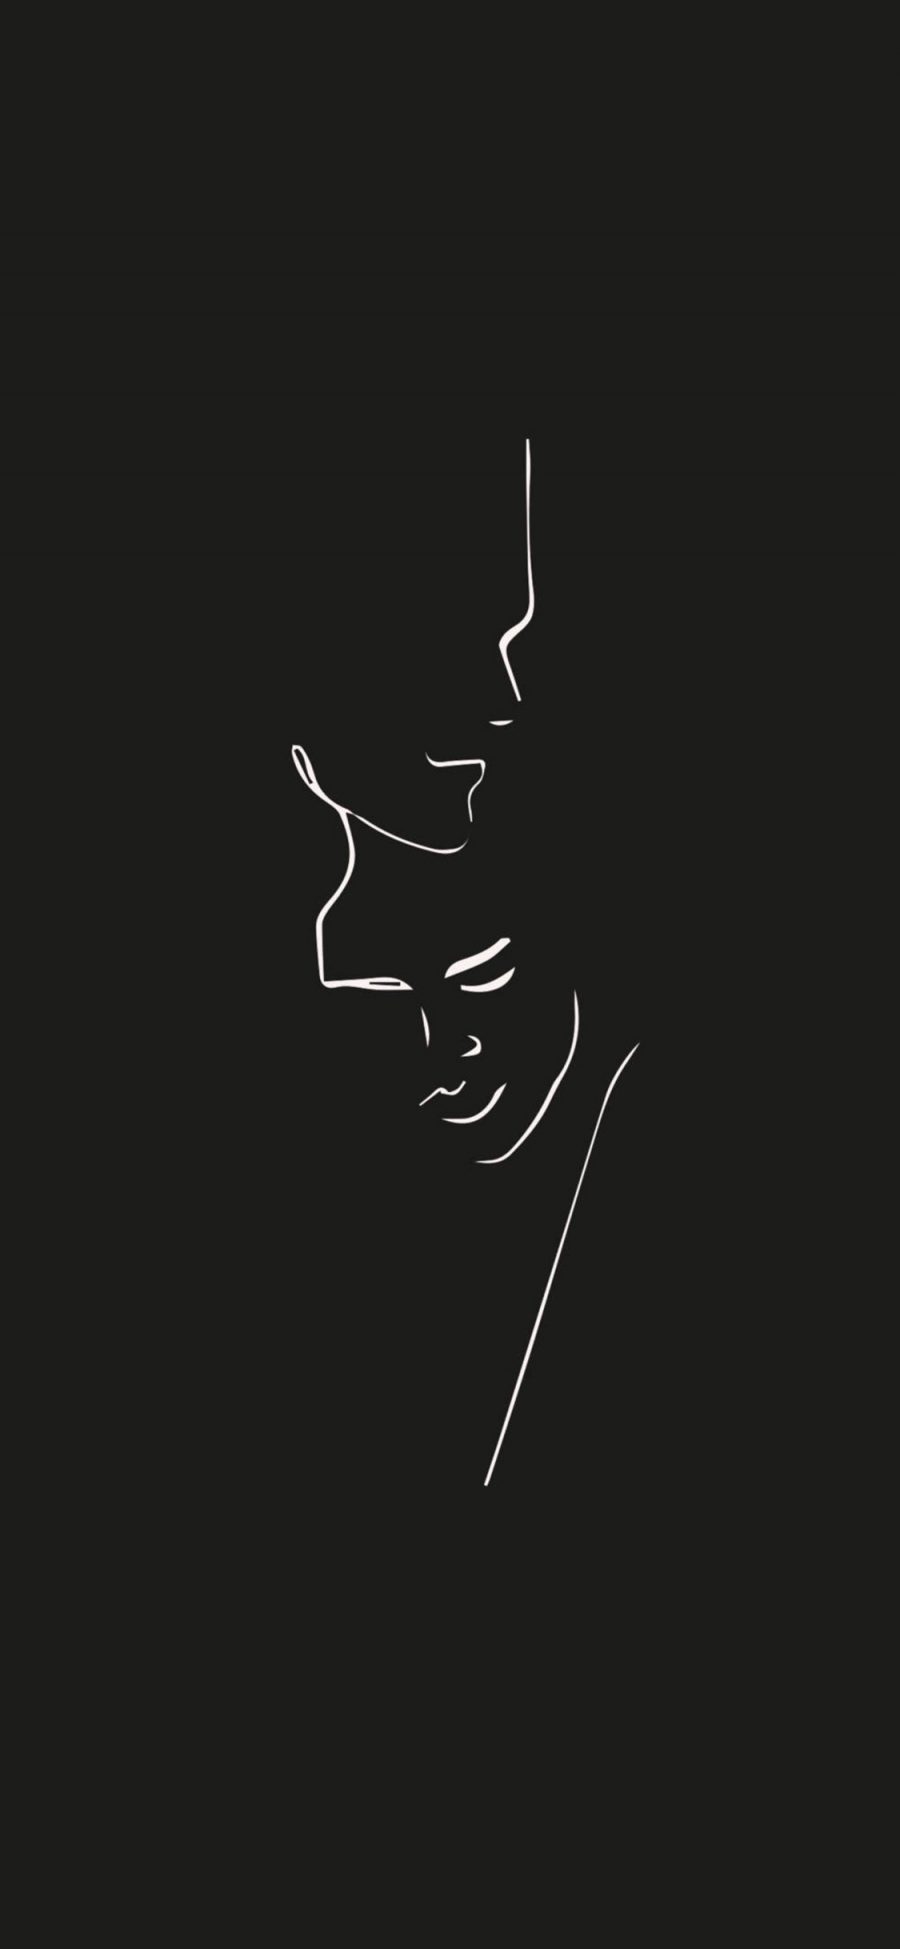 [2436×1125]黑色背景 线条 情侣 简笔 抽象画 苹果手机动漫壁纸图片